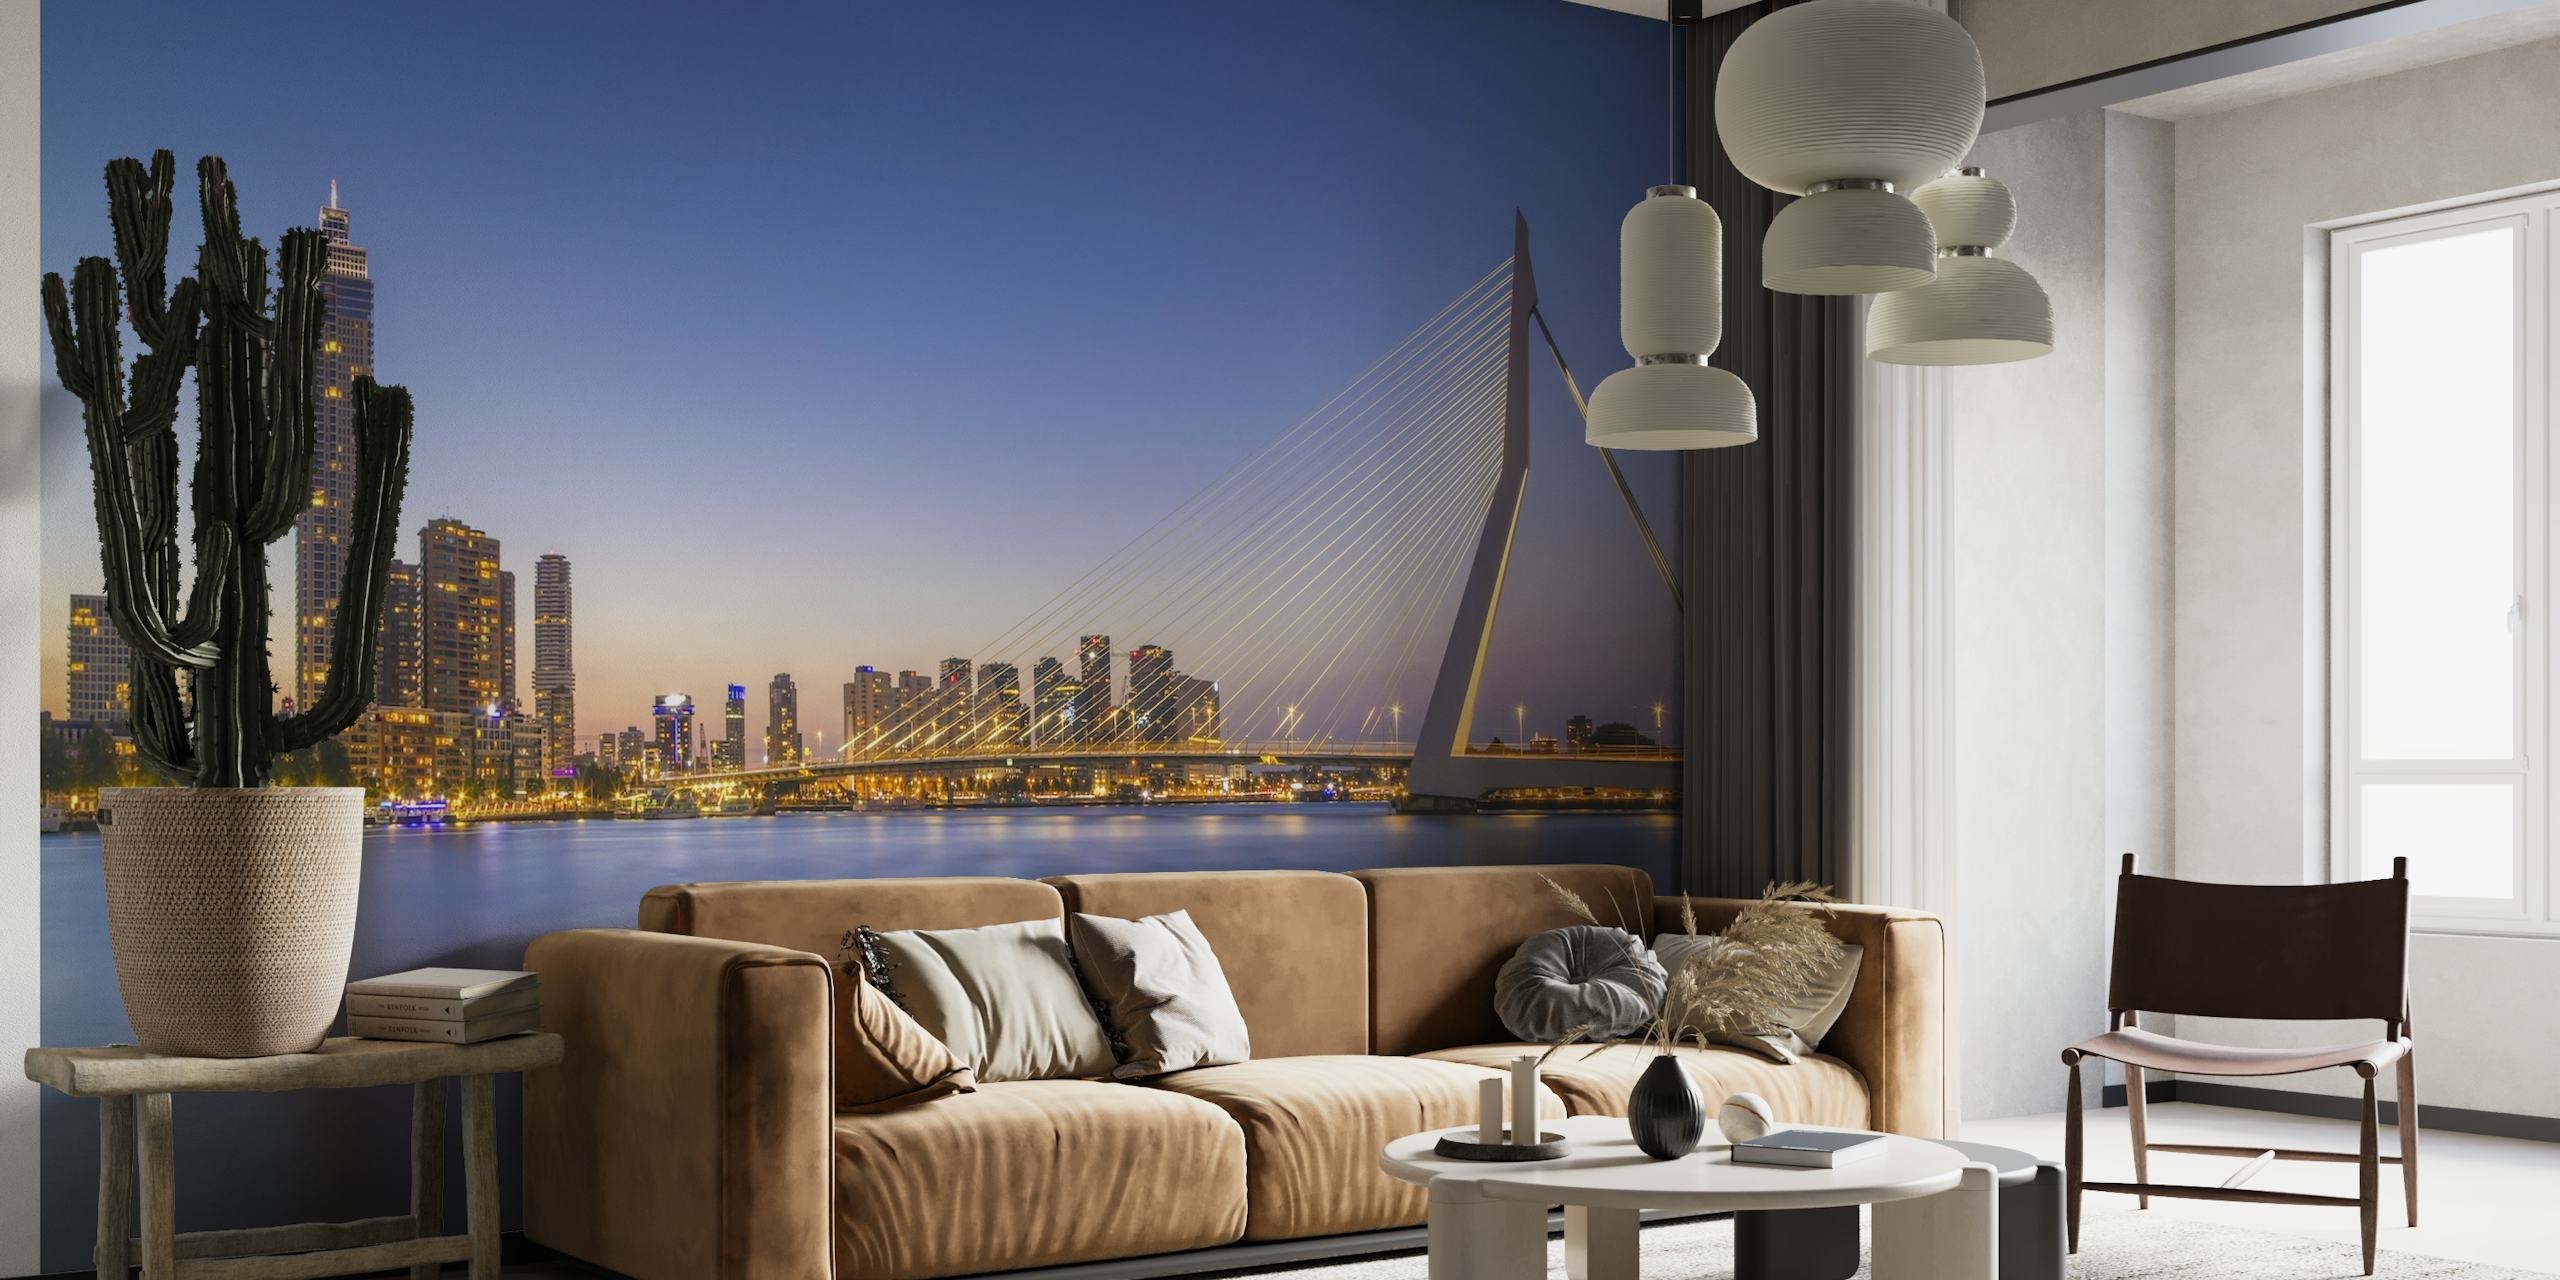 Fototapeta przedstawiająca Most Erazma i panoramę Rotterdamu o zmierzchu z odblaskowymi wodami